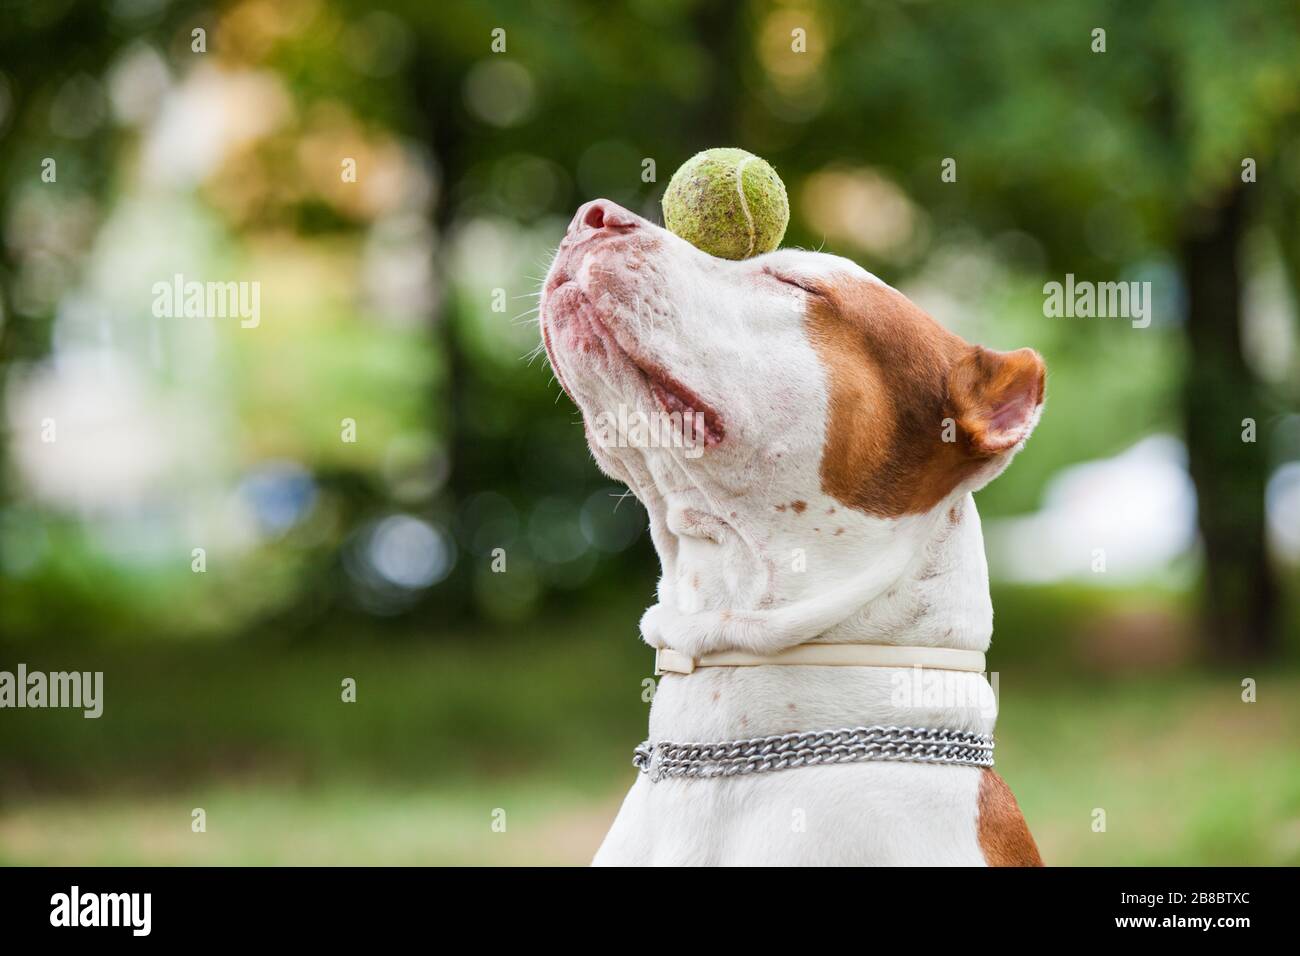 Vue latérale de l'adorable chien rouge et blanc tenant la balle sur le nez. Magnifique taureau à noyau avec chaîne sur l'entraînement à l'extérieur. Isolé sur fond vert flou Banque D'Images